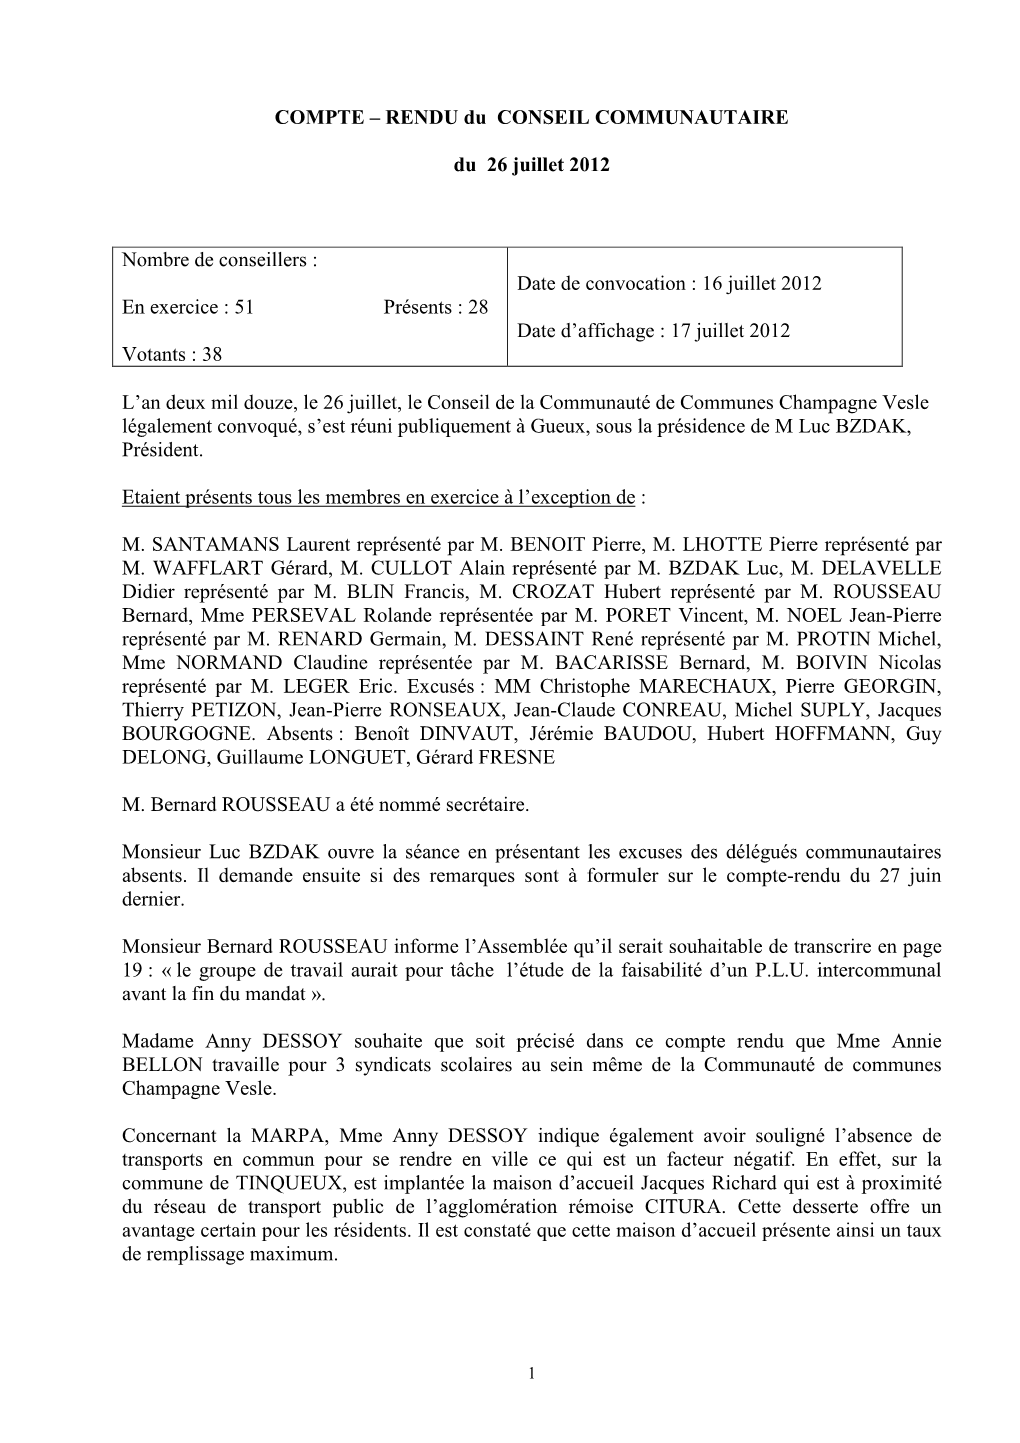 Compte-Rendu Conseil Communautaire Du 26-07-2012